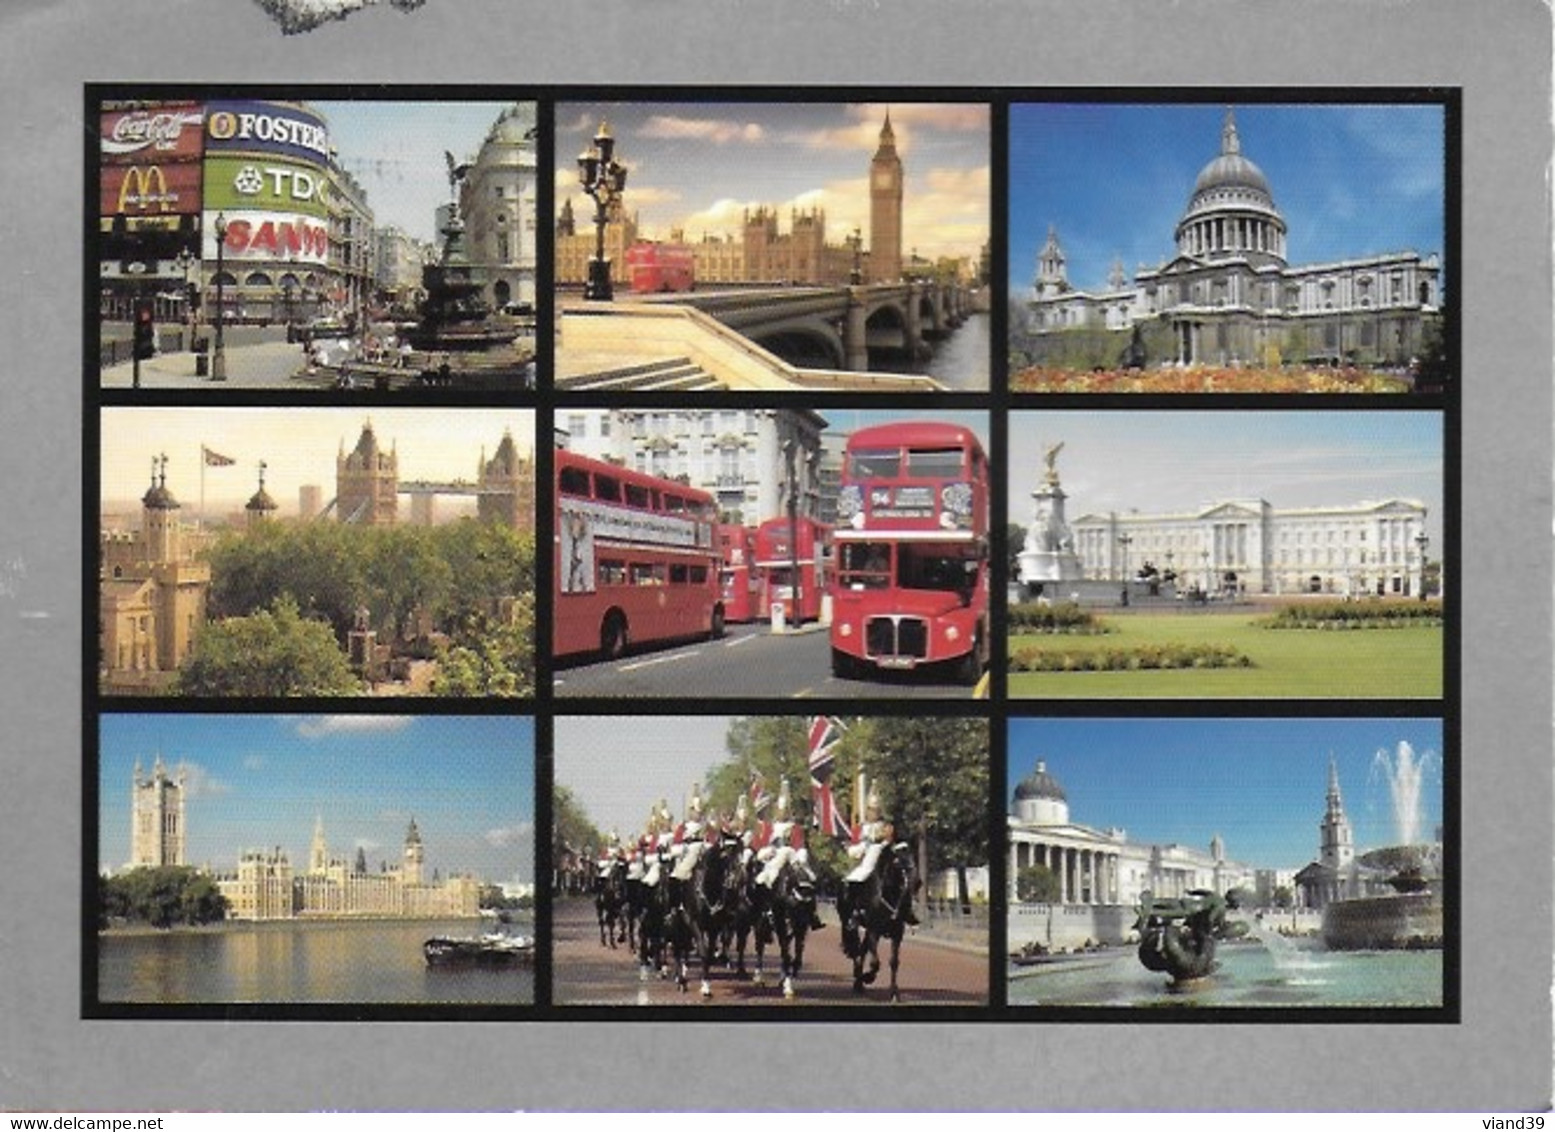 London. -  Londres. - Multi Vues.  -  Cachet Poste 2004 - Houses Of Parliament